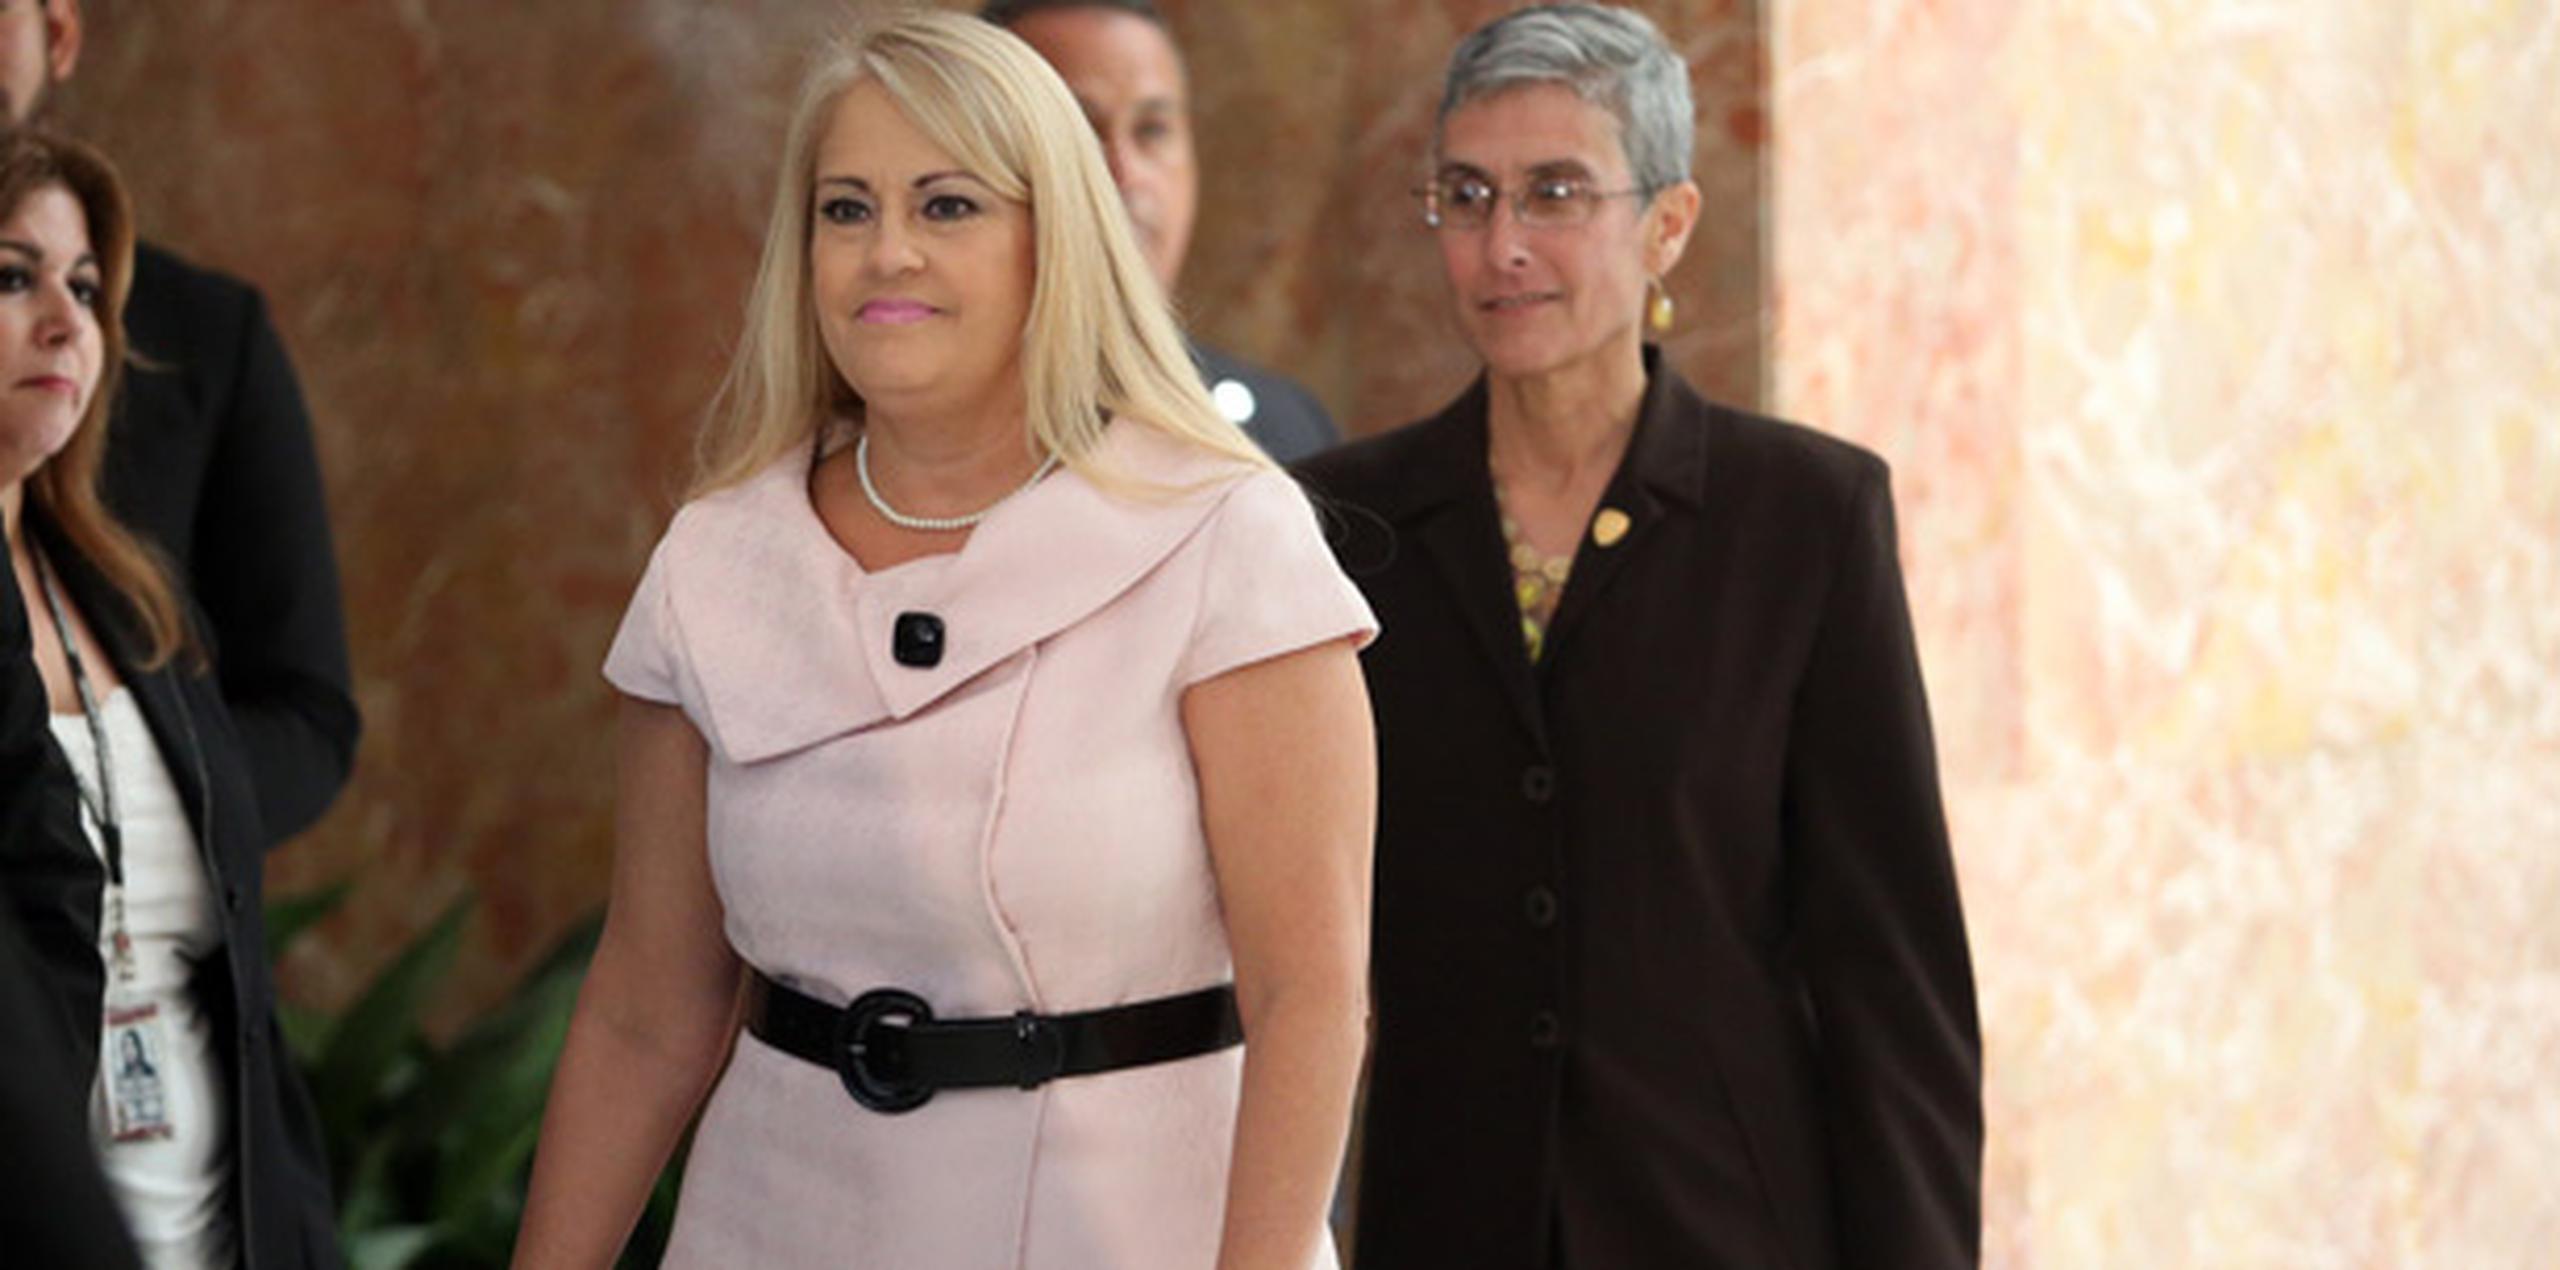 Wanda Vázquez y Michelle Hernández Fraley asumirían dos cargos claves en el gabinete del nuevo gobierno. Las designadas adelantaron de inmediato algunas de sus metas, de ser confirmadas en los importantes puestos. (juan.martinez@gfrmedia.com)